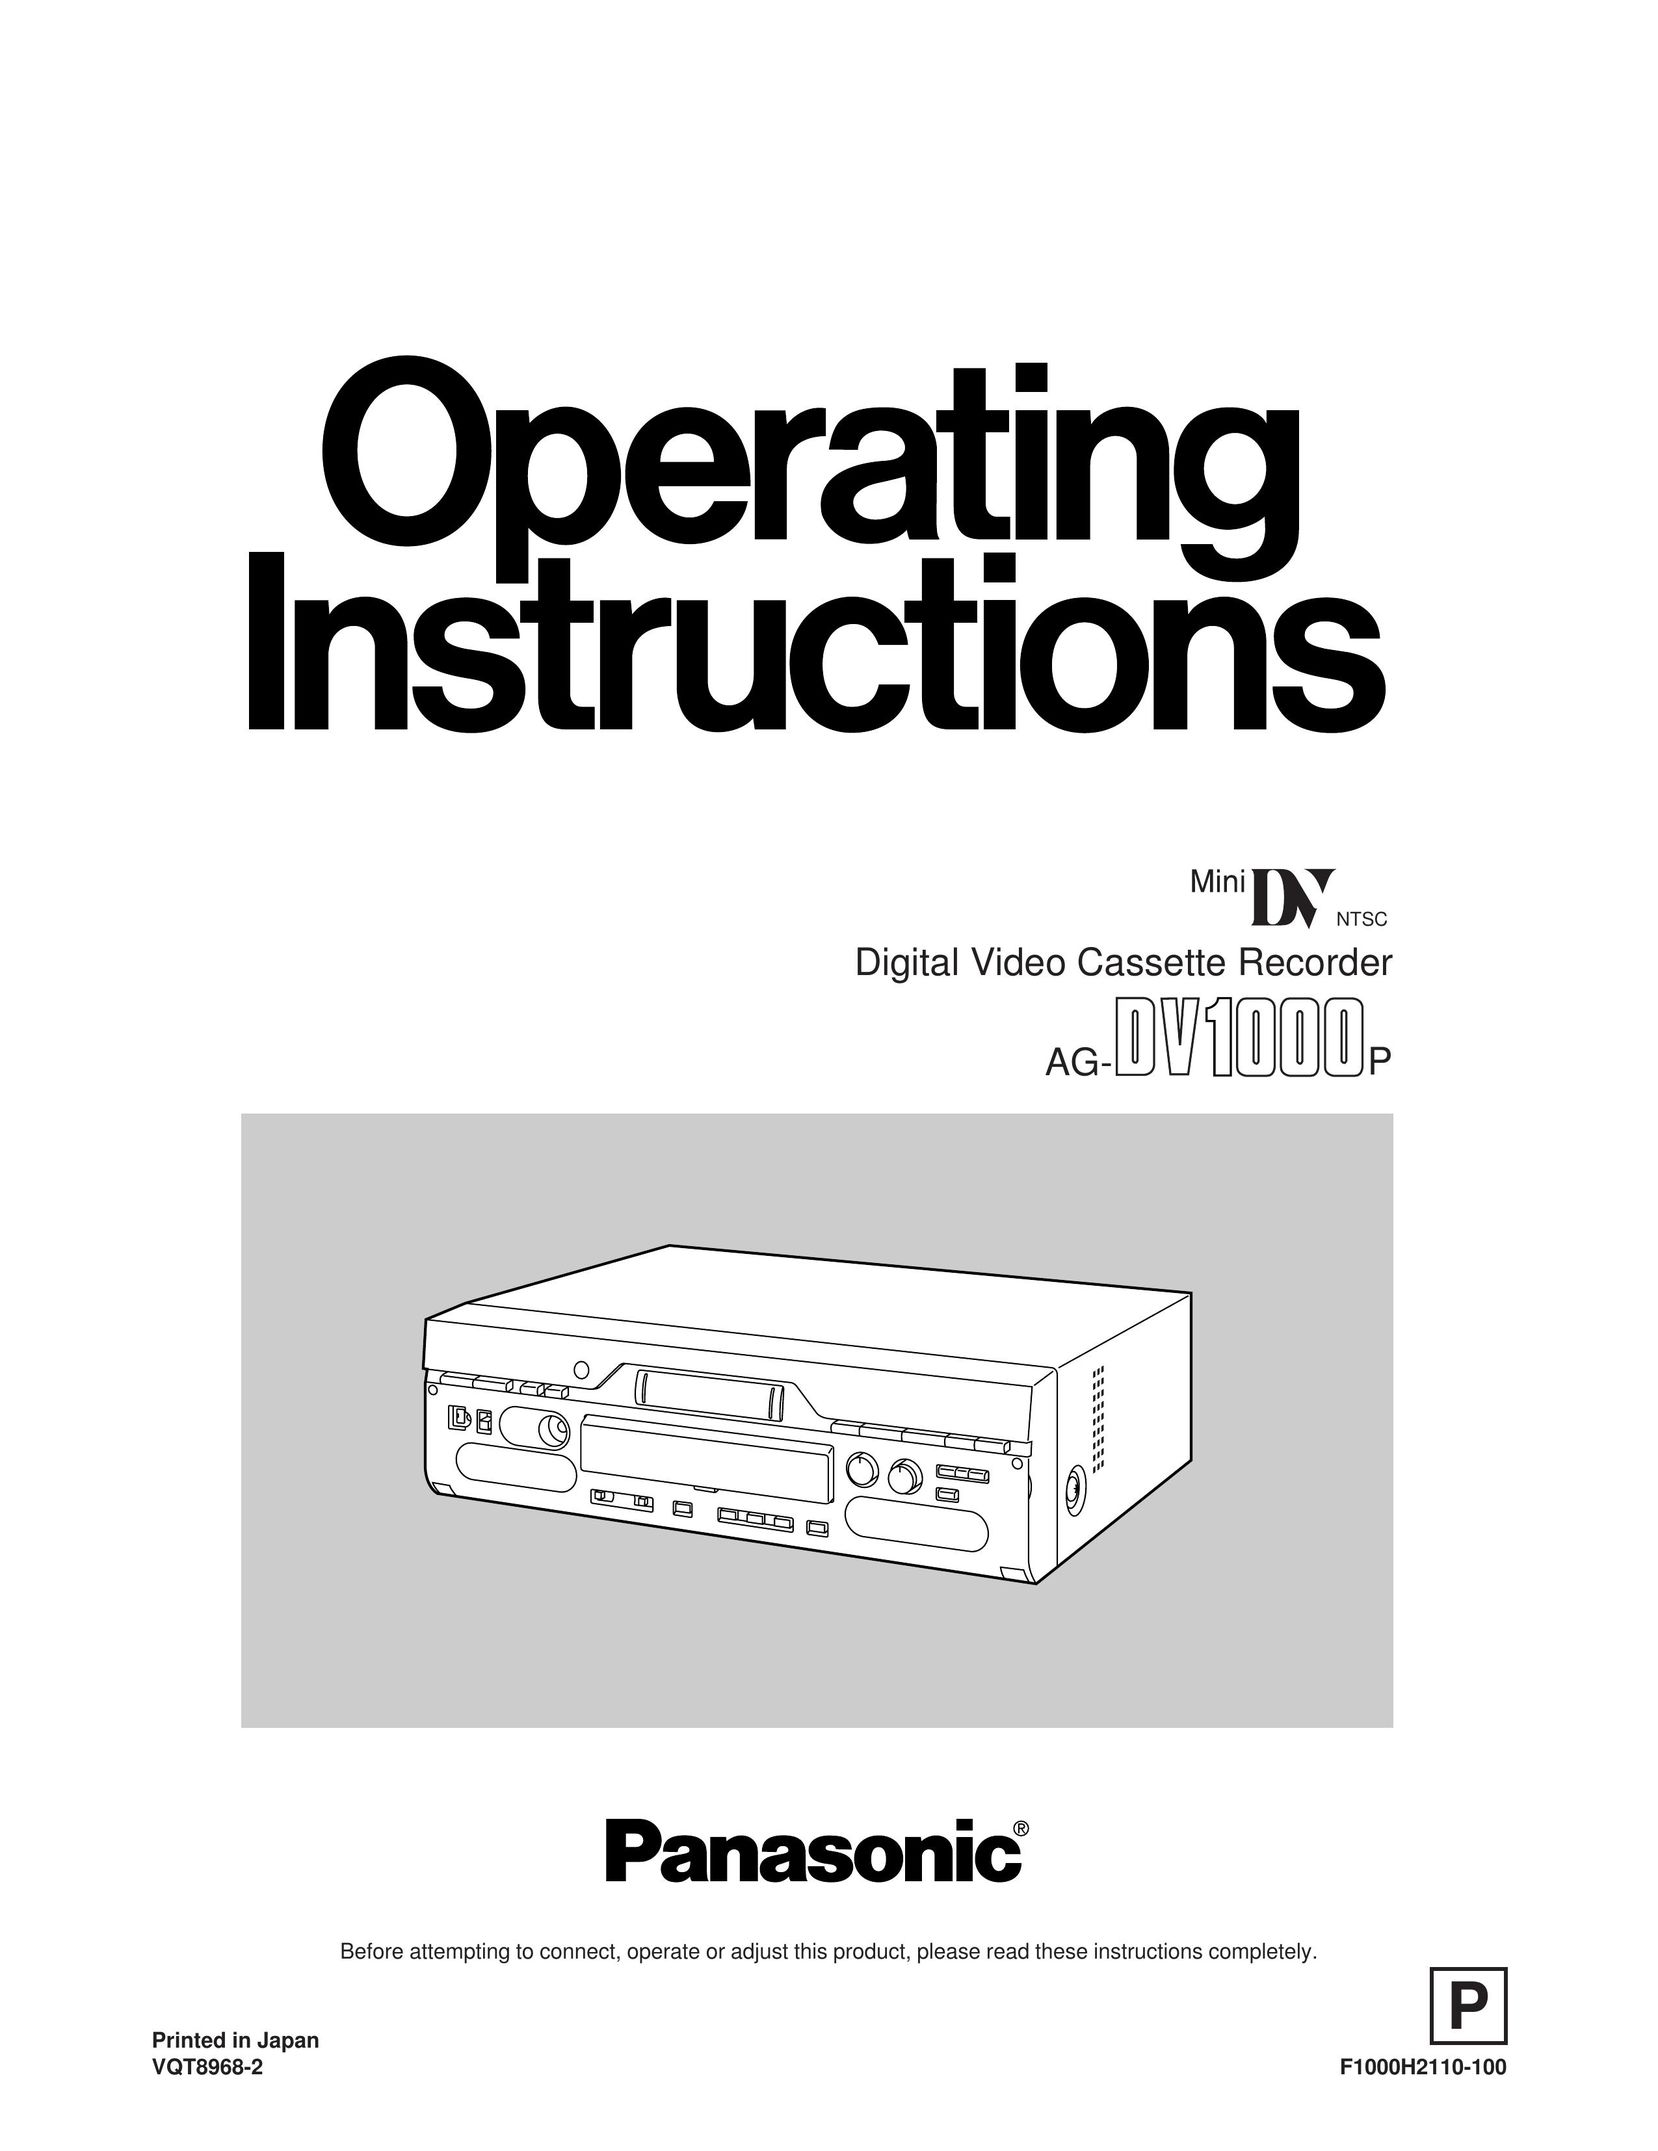 Panasonic AG-DV1000P VCR User Manual